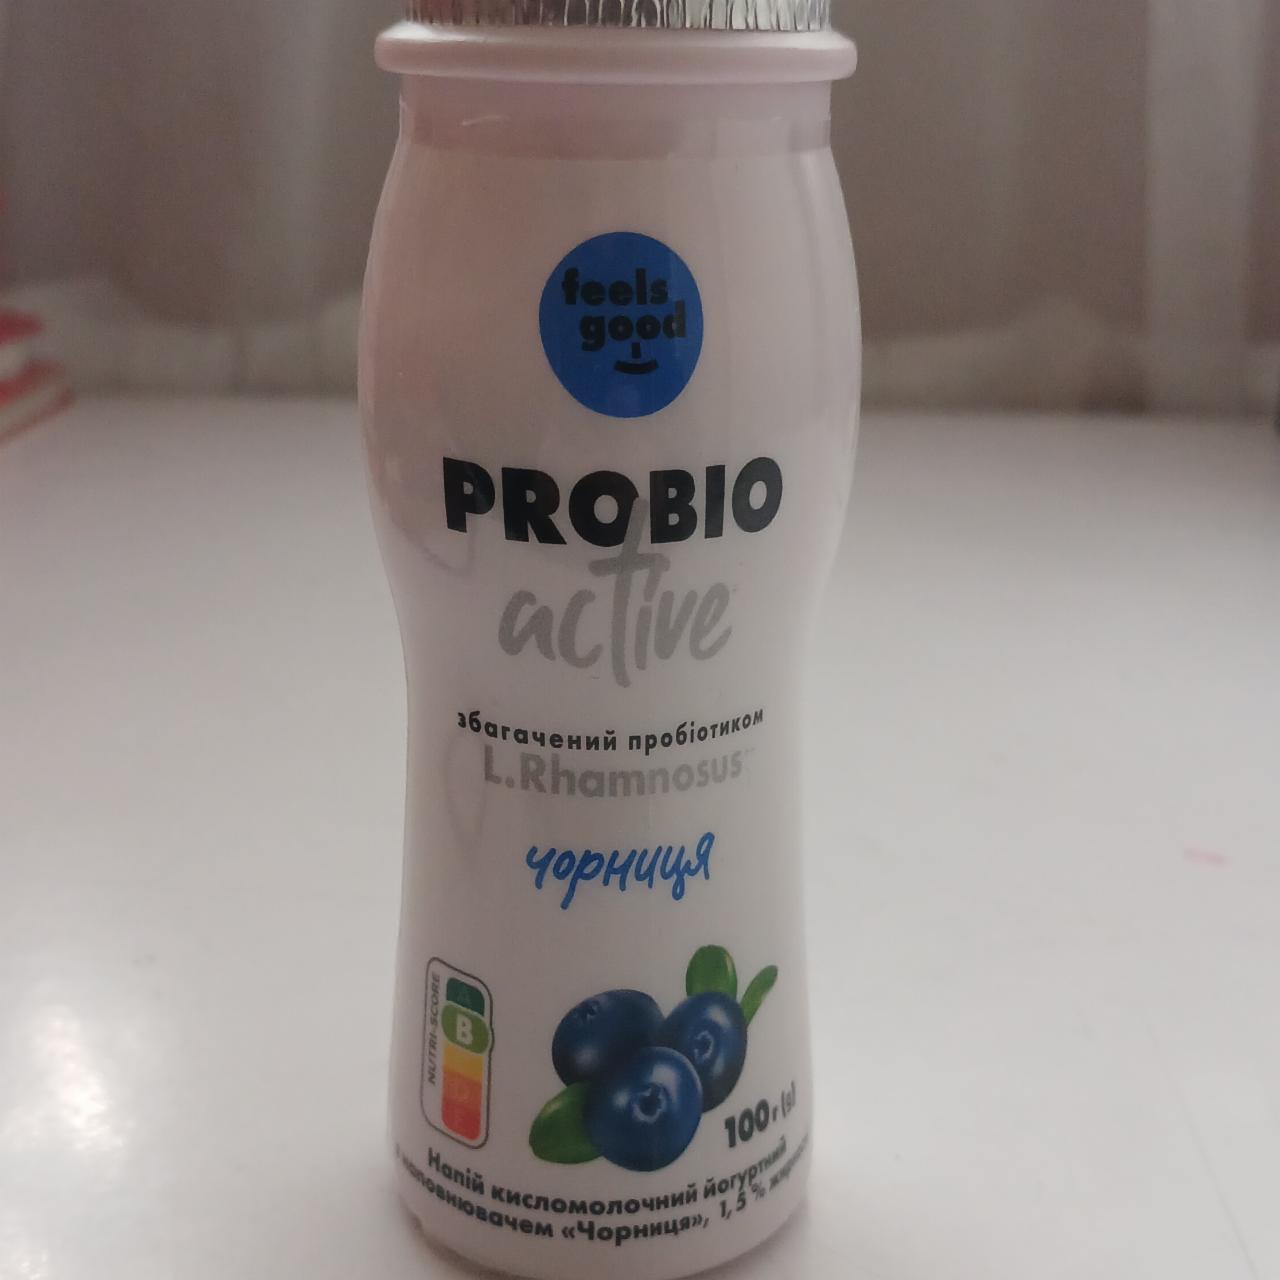 Фото - Напиток кисломолочный 1.5% йогуртный с наполнителем черника Probio Active Feels Good